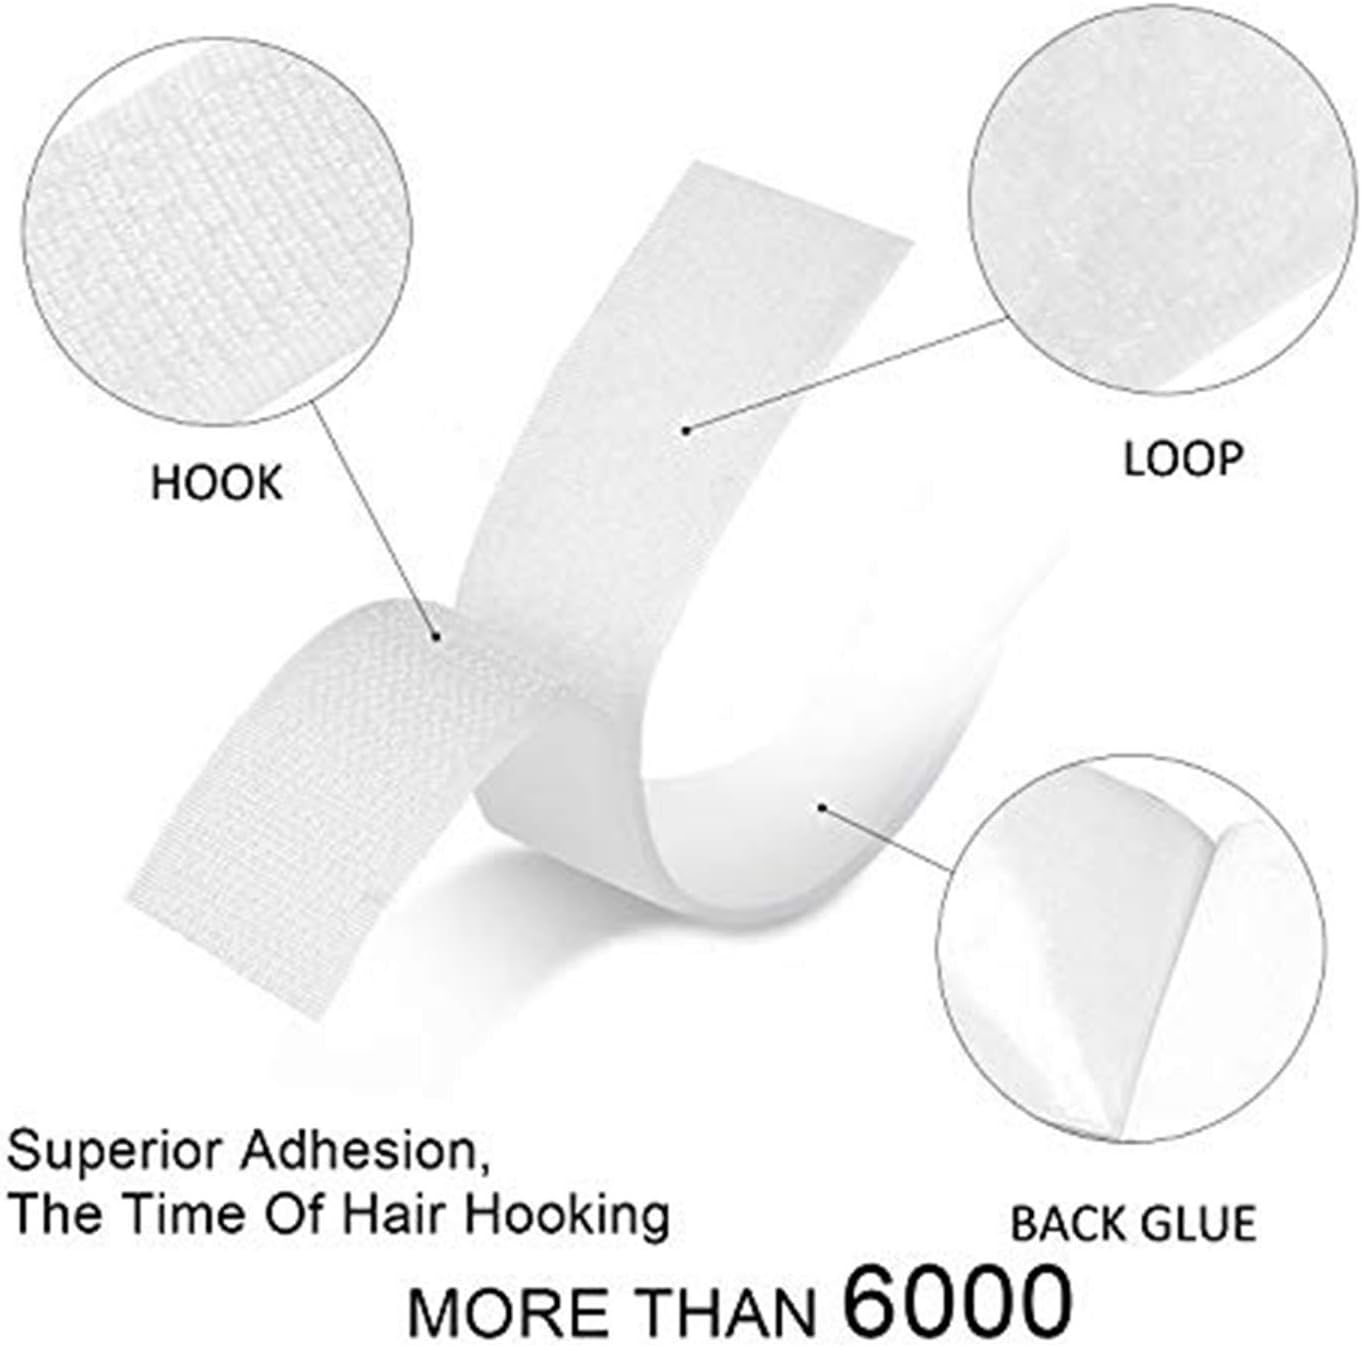 Dubkart Hook & Loop Velcro Self Adhesive Sticky Strip Tape